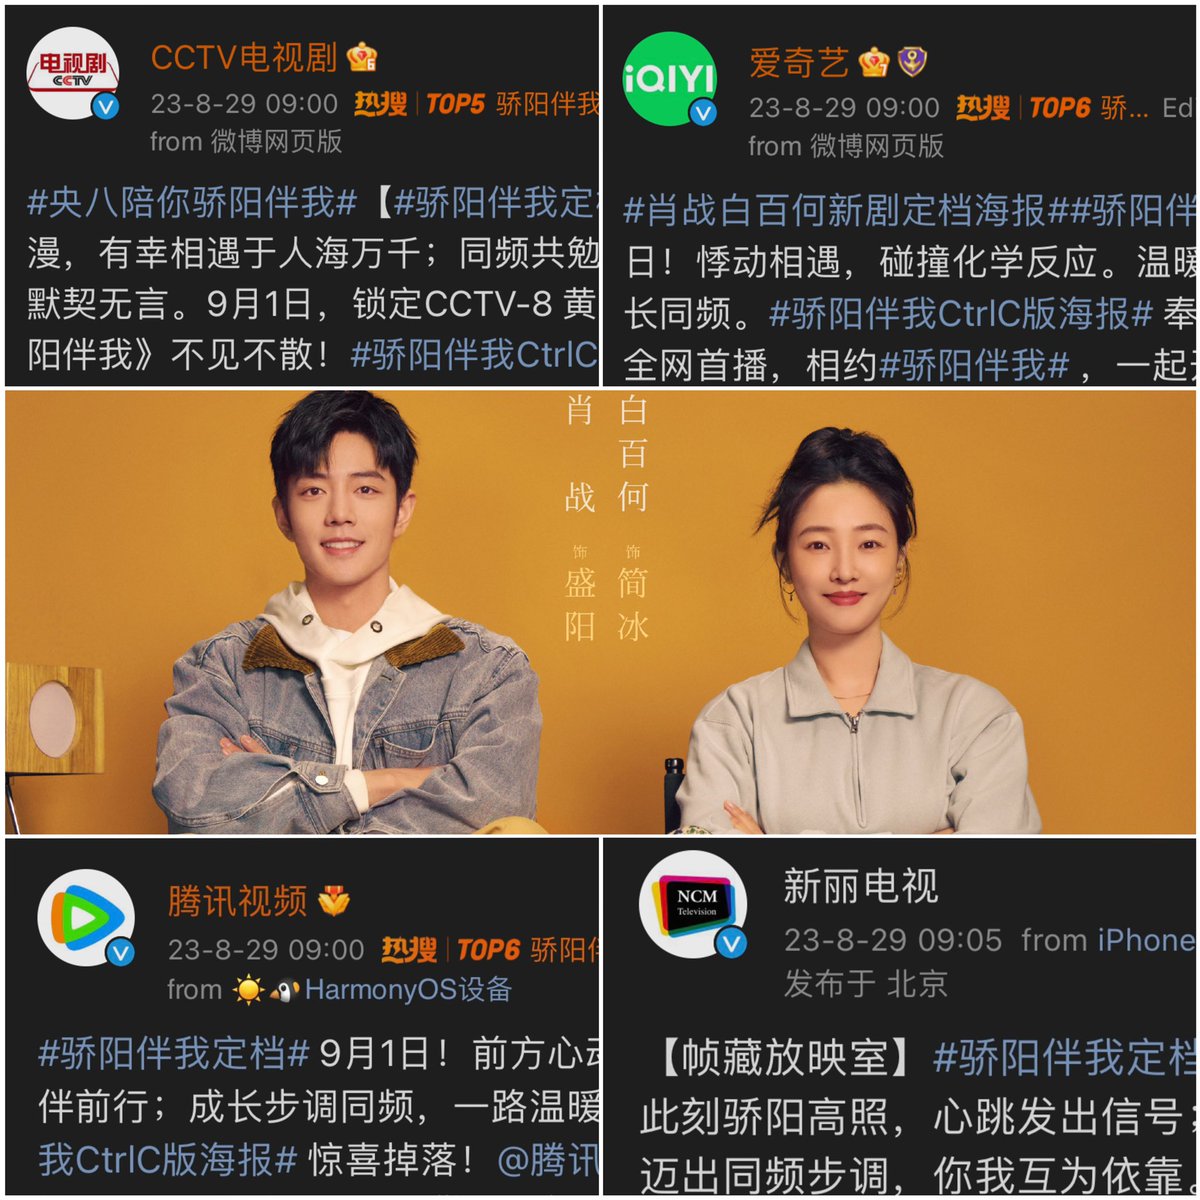 ออกอากาศ 01-09-23 Sunshine by My Side

ทีมผลิตทีมสร้างมาครบทีมโดยพร้อมเพรียงกัน 

ผลิตโดย : CCT & iQiYi
ร่วมผลิต : Tencent & Xinli TV
นักแสดงนำ : #XiaoZhan #BaiBaiHe

XIAOZHAN SUNSHINE
#XiaoZhanShengYang
#SunshineByMySide